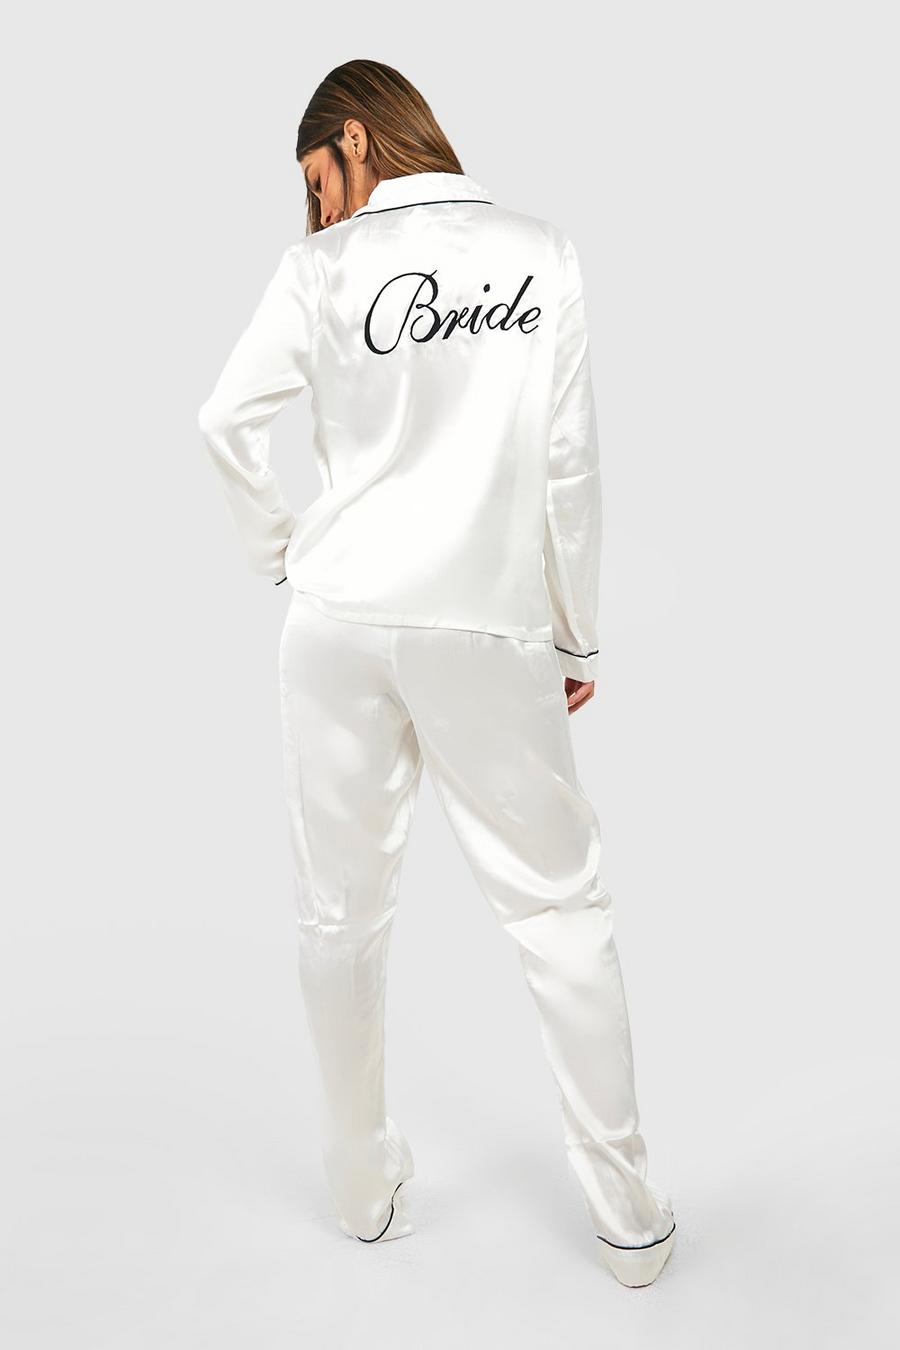 Satin Pyjama-Set mit Bride Stickerei, Elfenbeinfarben blanc